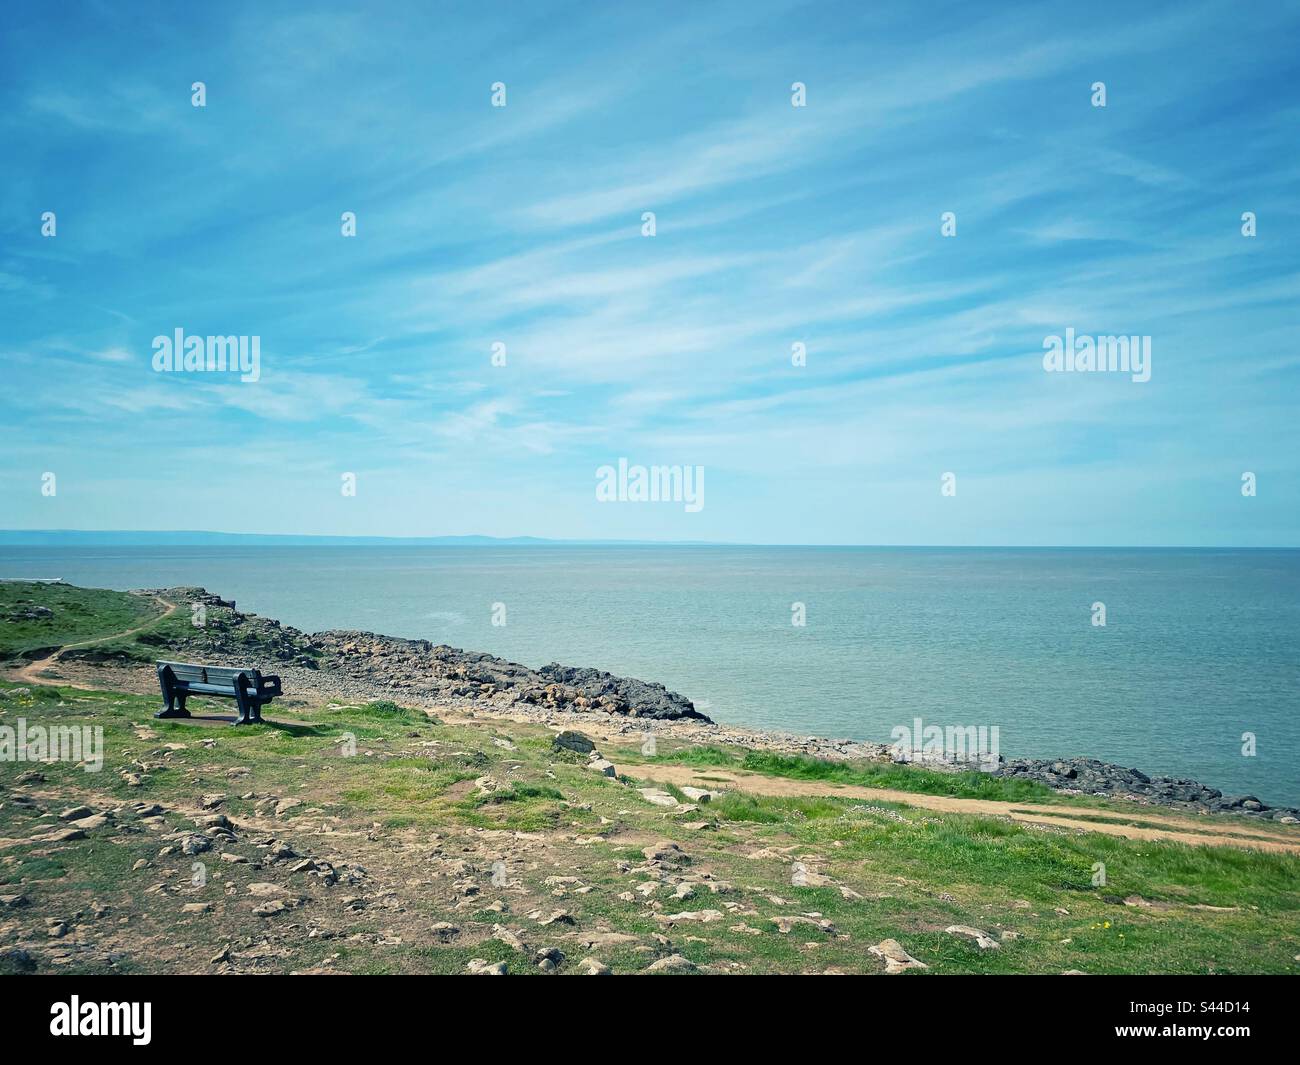 Una fotografia di una panchina su una scogliera costiera che si affaccia sull'oceano Foto Stock